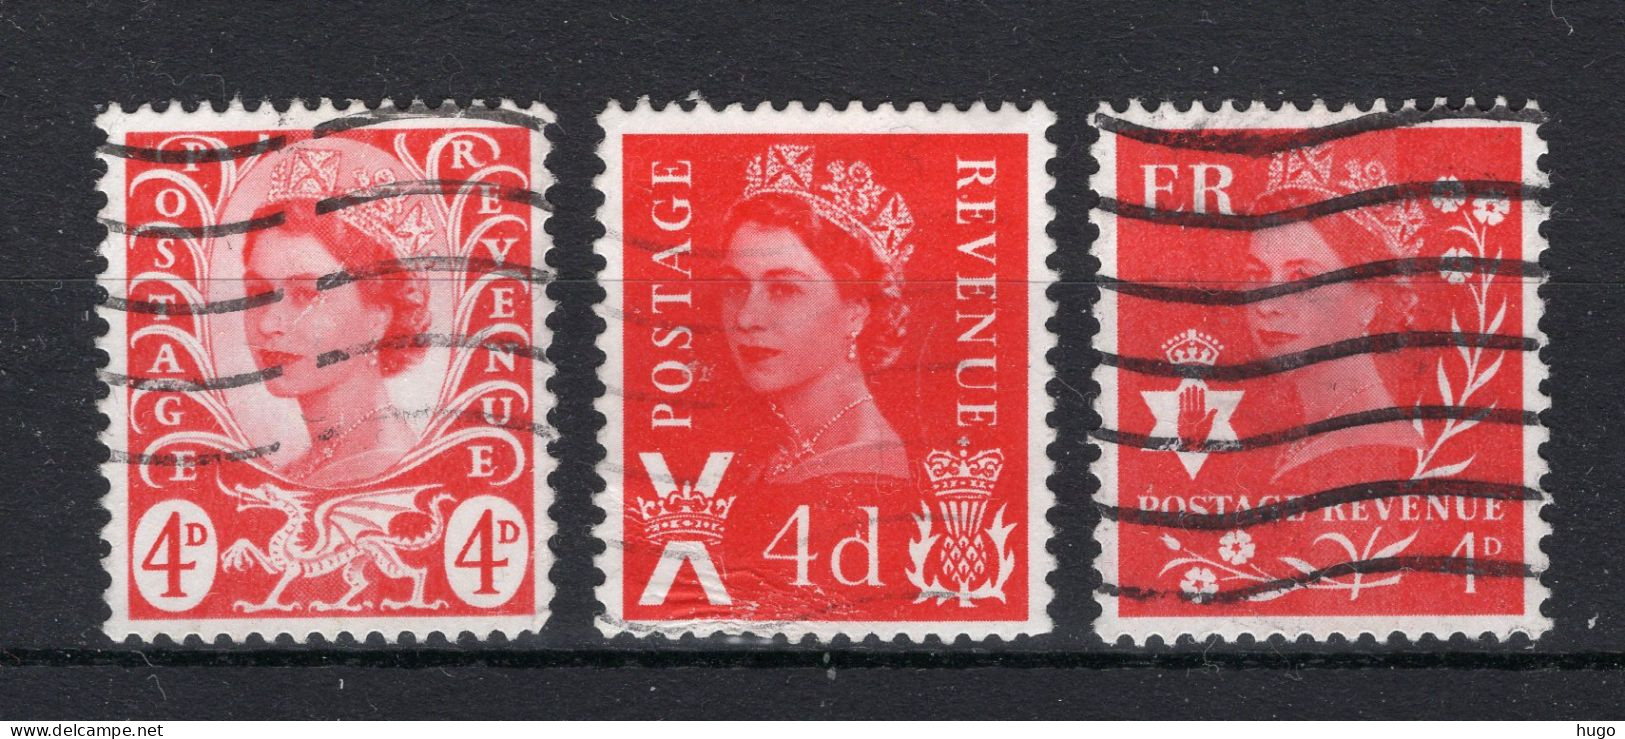 GROOT BRITTANIE Yt. 527/529° Gestempeld 1968-1971 - Used Stamps